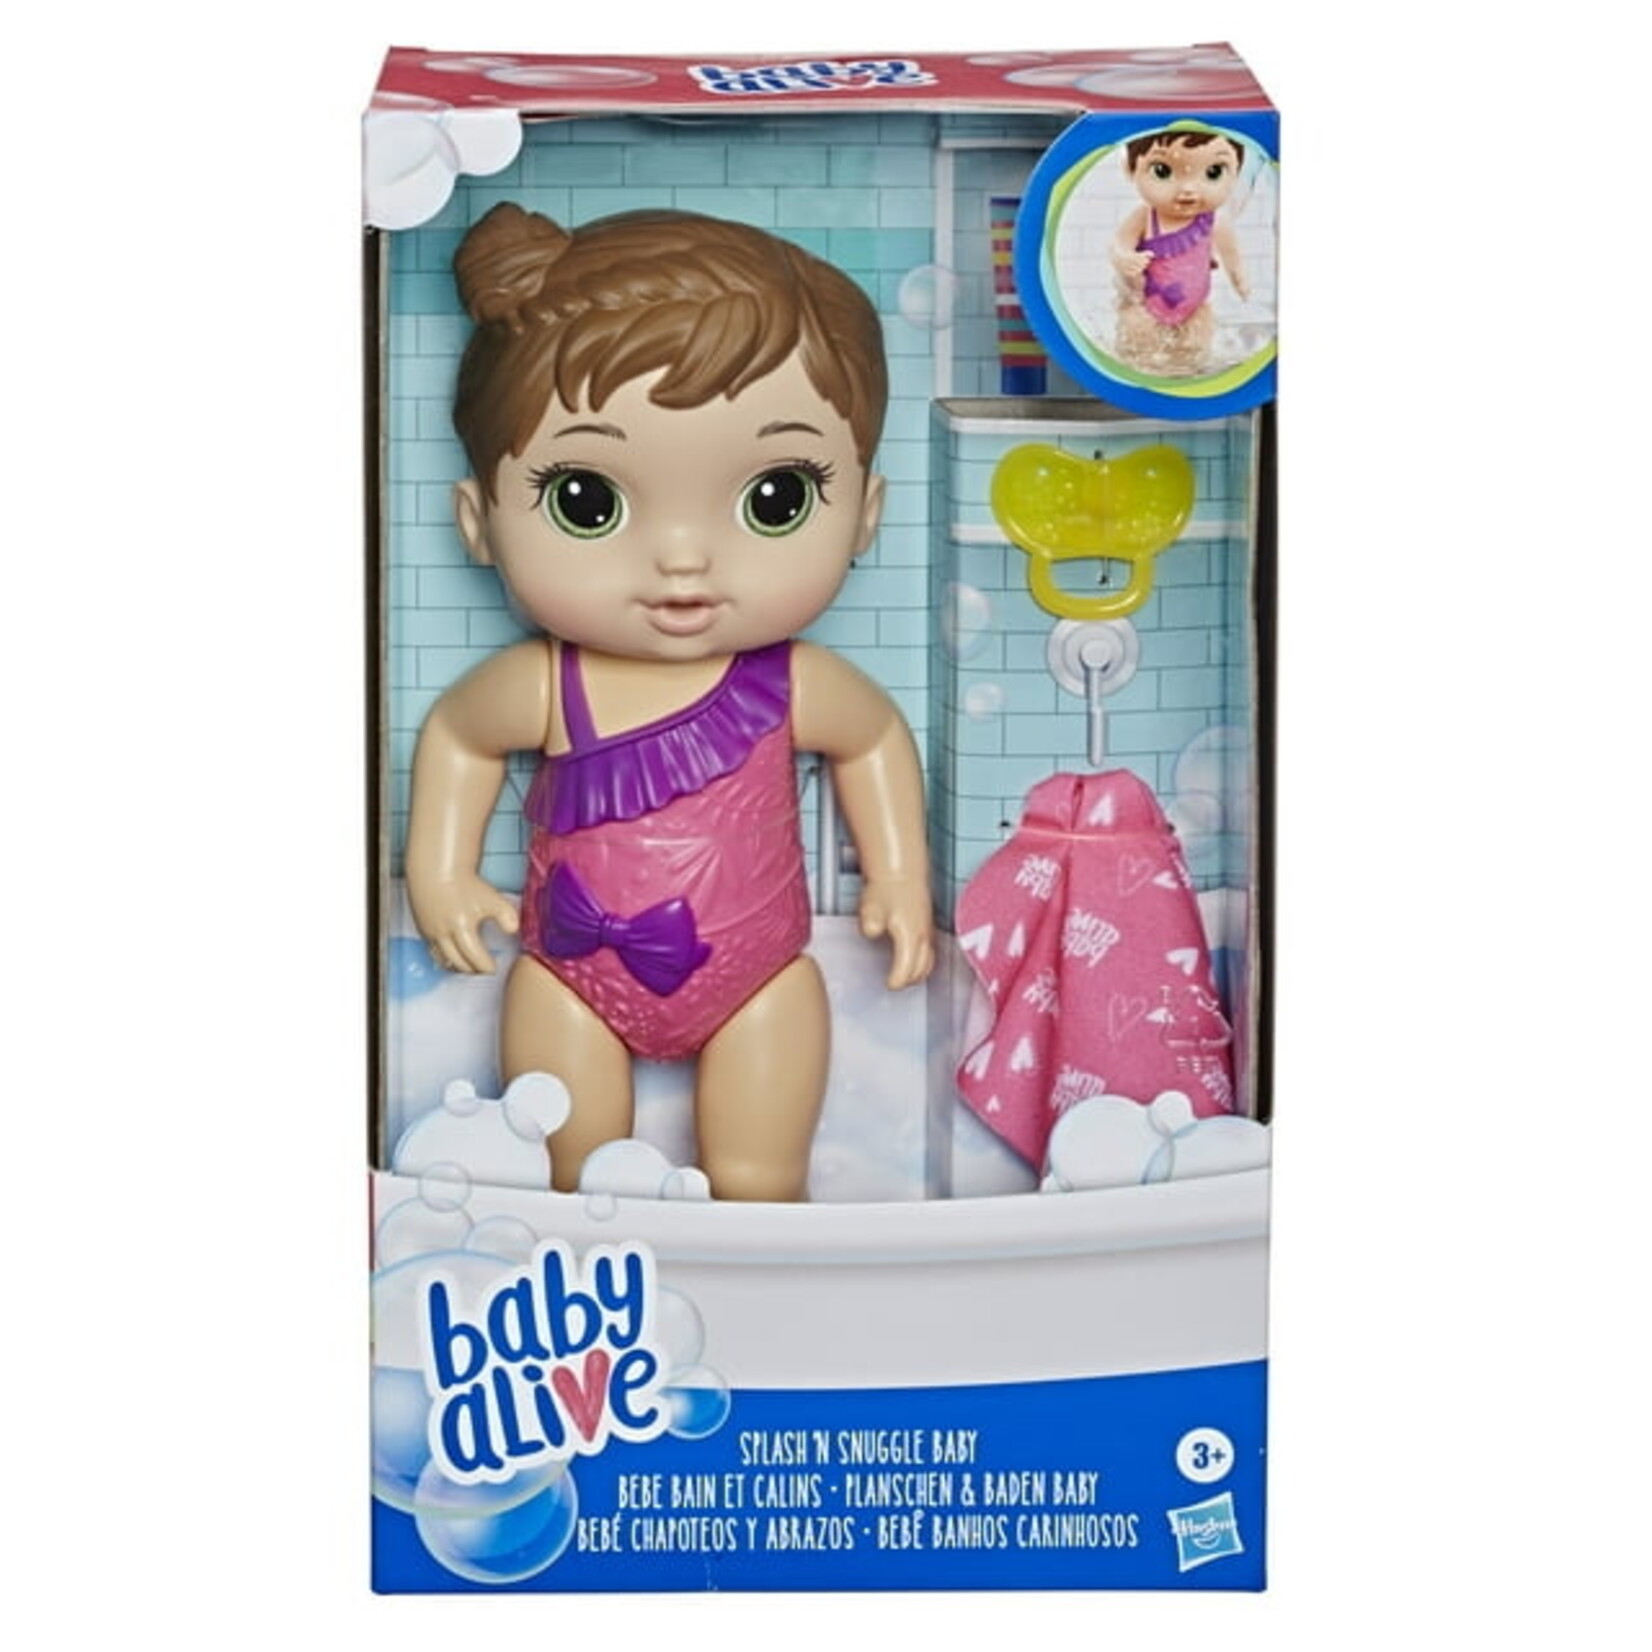 Hasbro Baby Alive Splash -n- Snuggle Baby Brown Hair